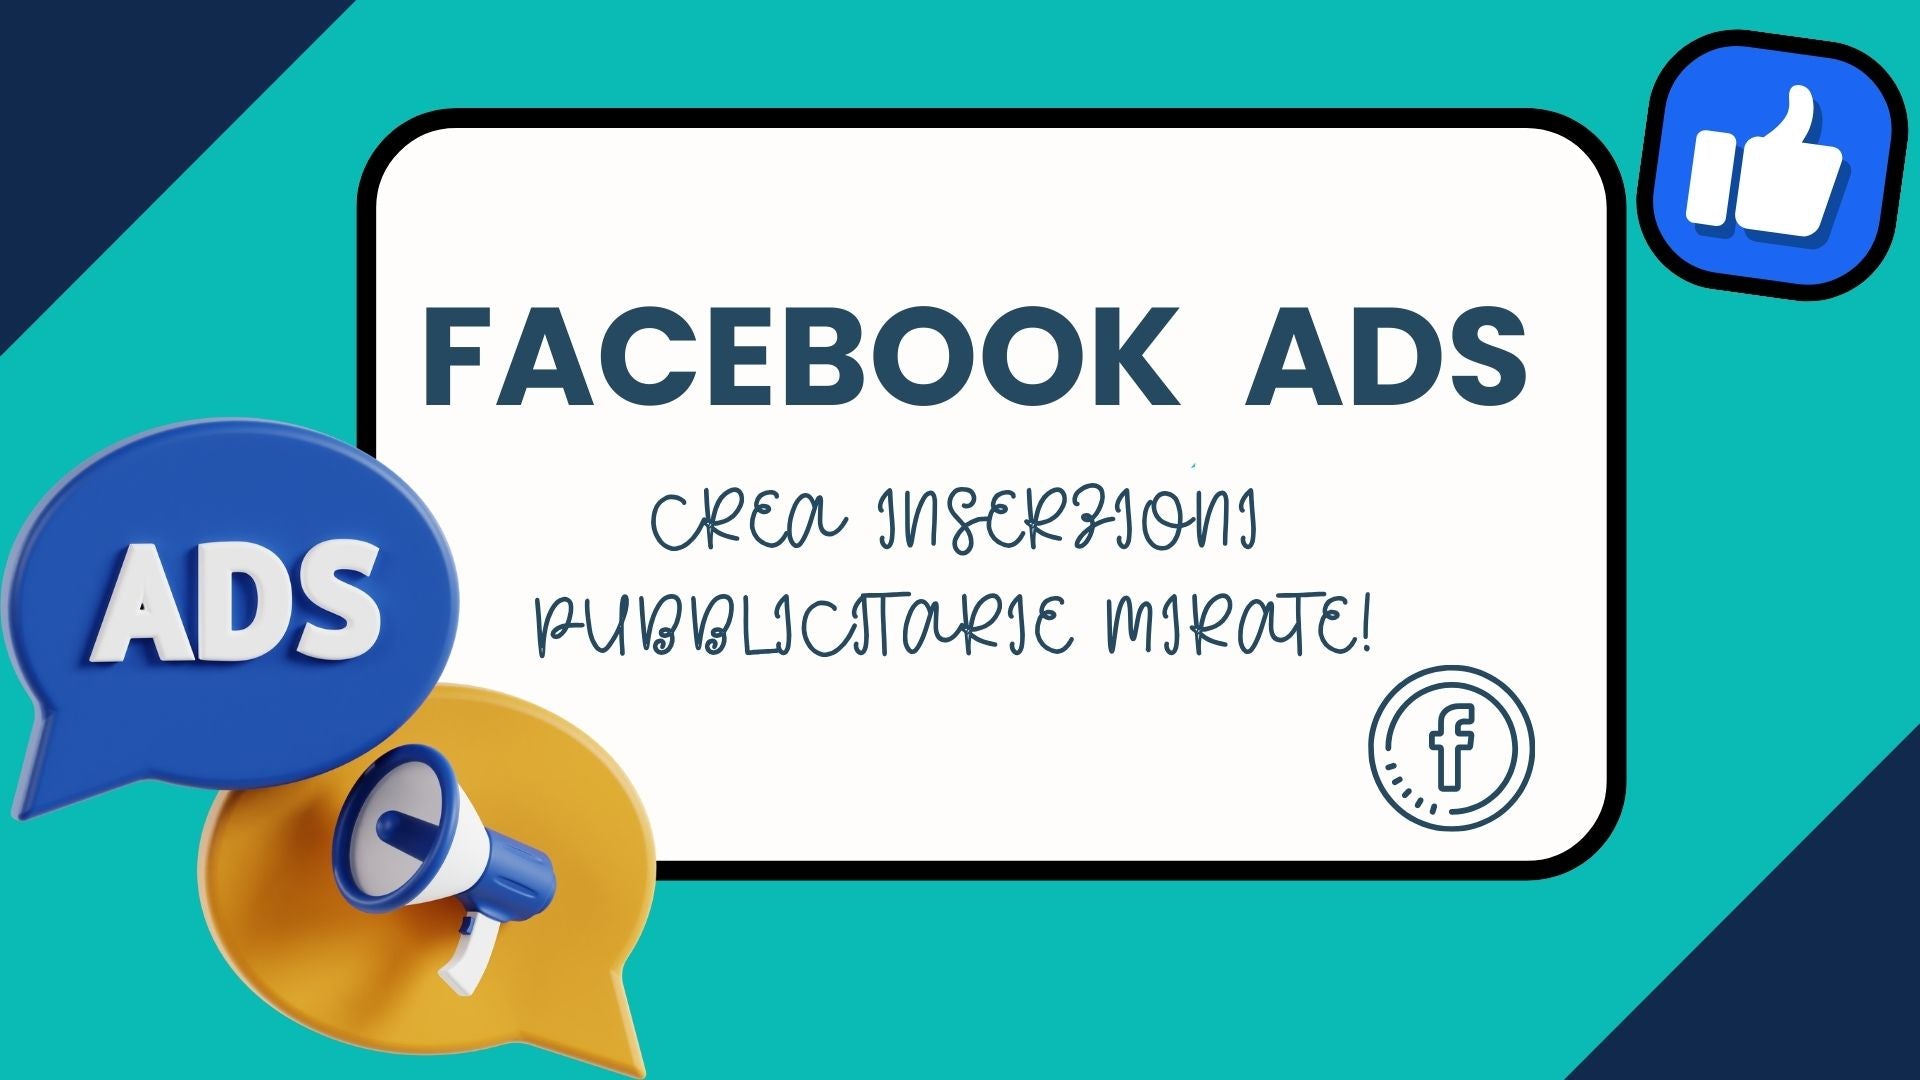 Sponsorizzare i propri prodotti con Facebook Ads